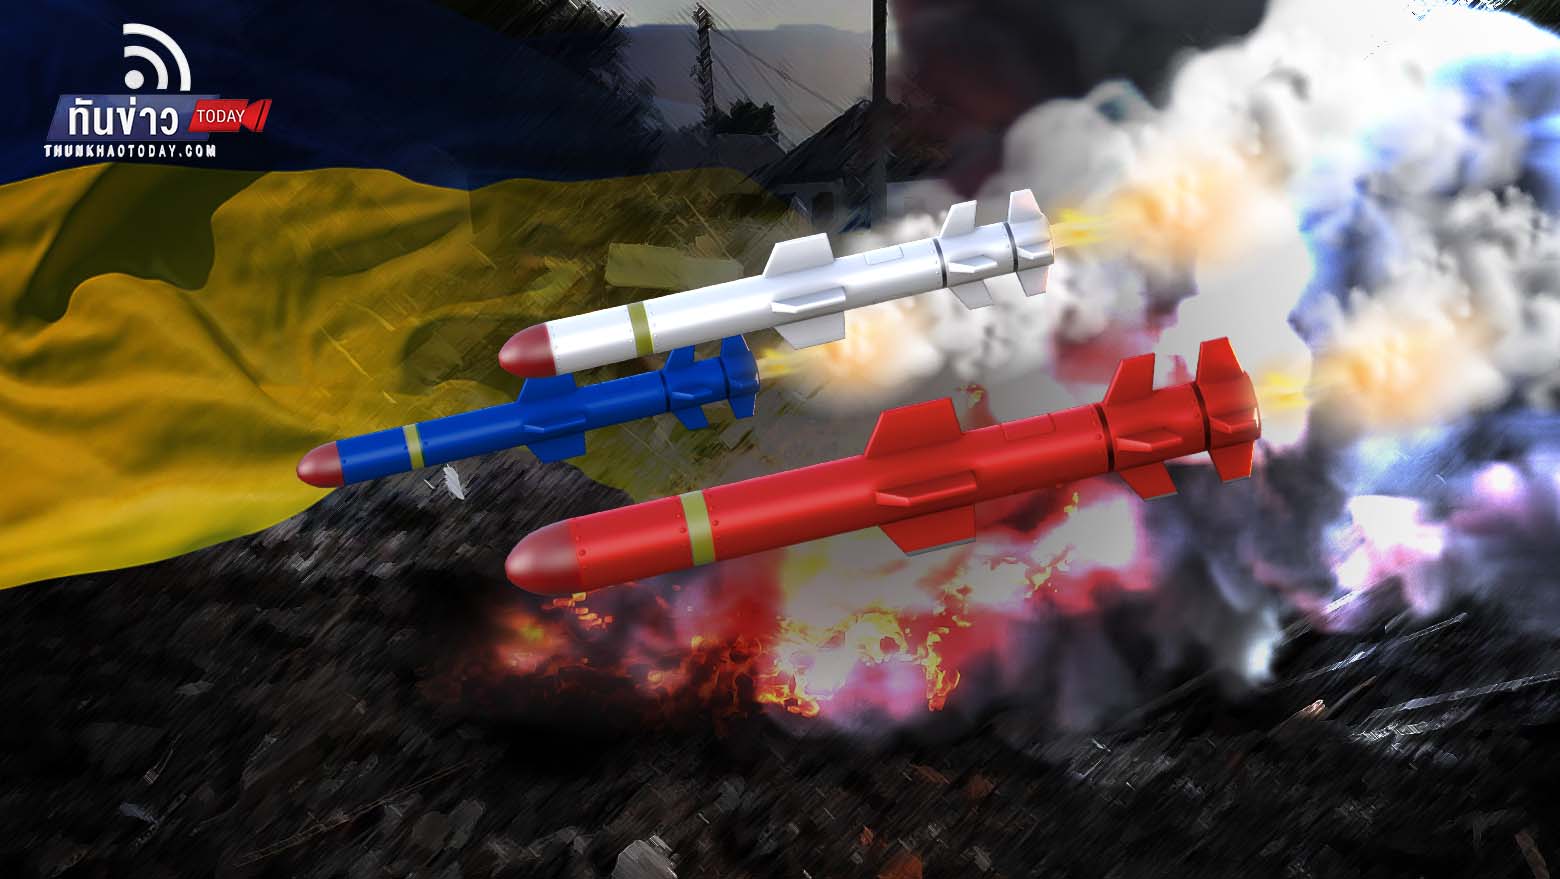 รัสเซียยิงขีปนาวุธถล่มยูเครนในวันชาติ พลเรือนเสียชีวิต 22 ราย